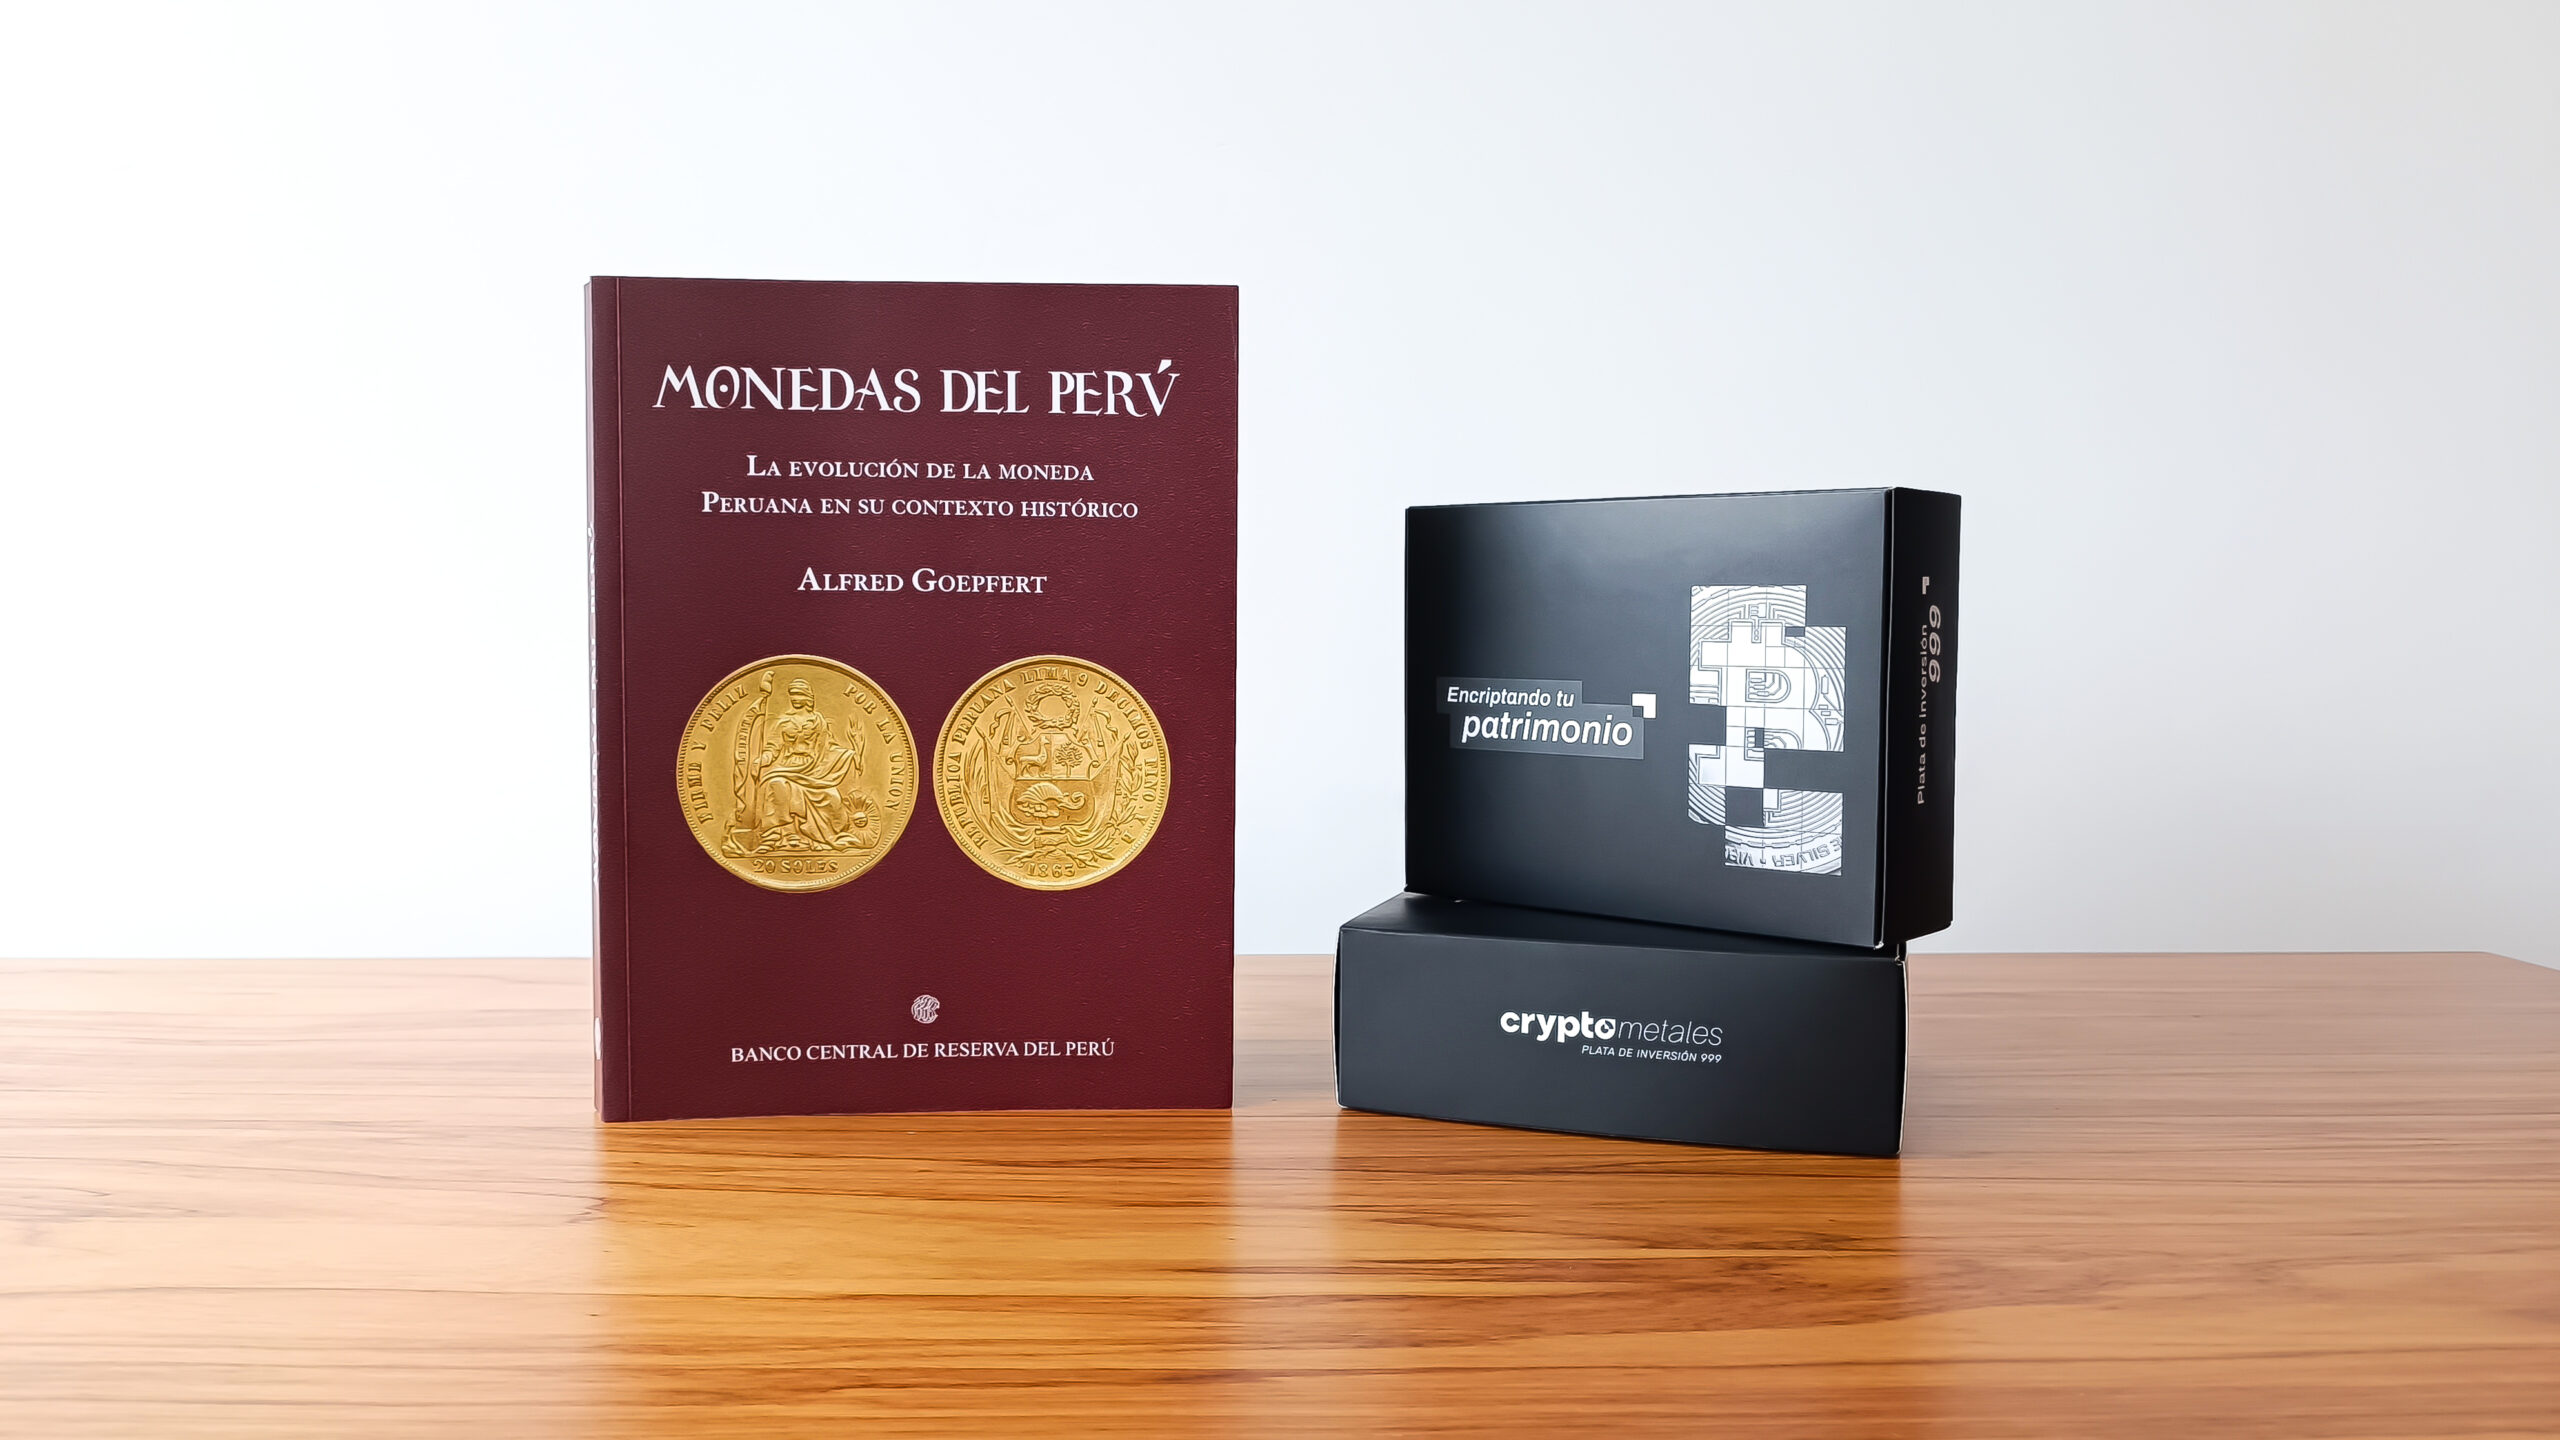 Libro Monedas del Perú de Alfred Goepfert junto a packaging de Crypto Metales.